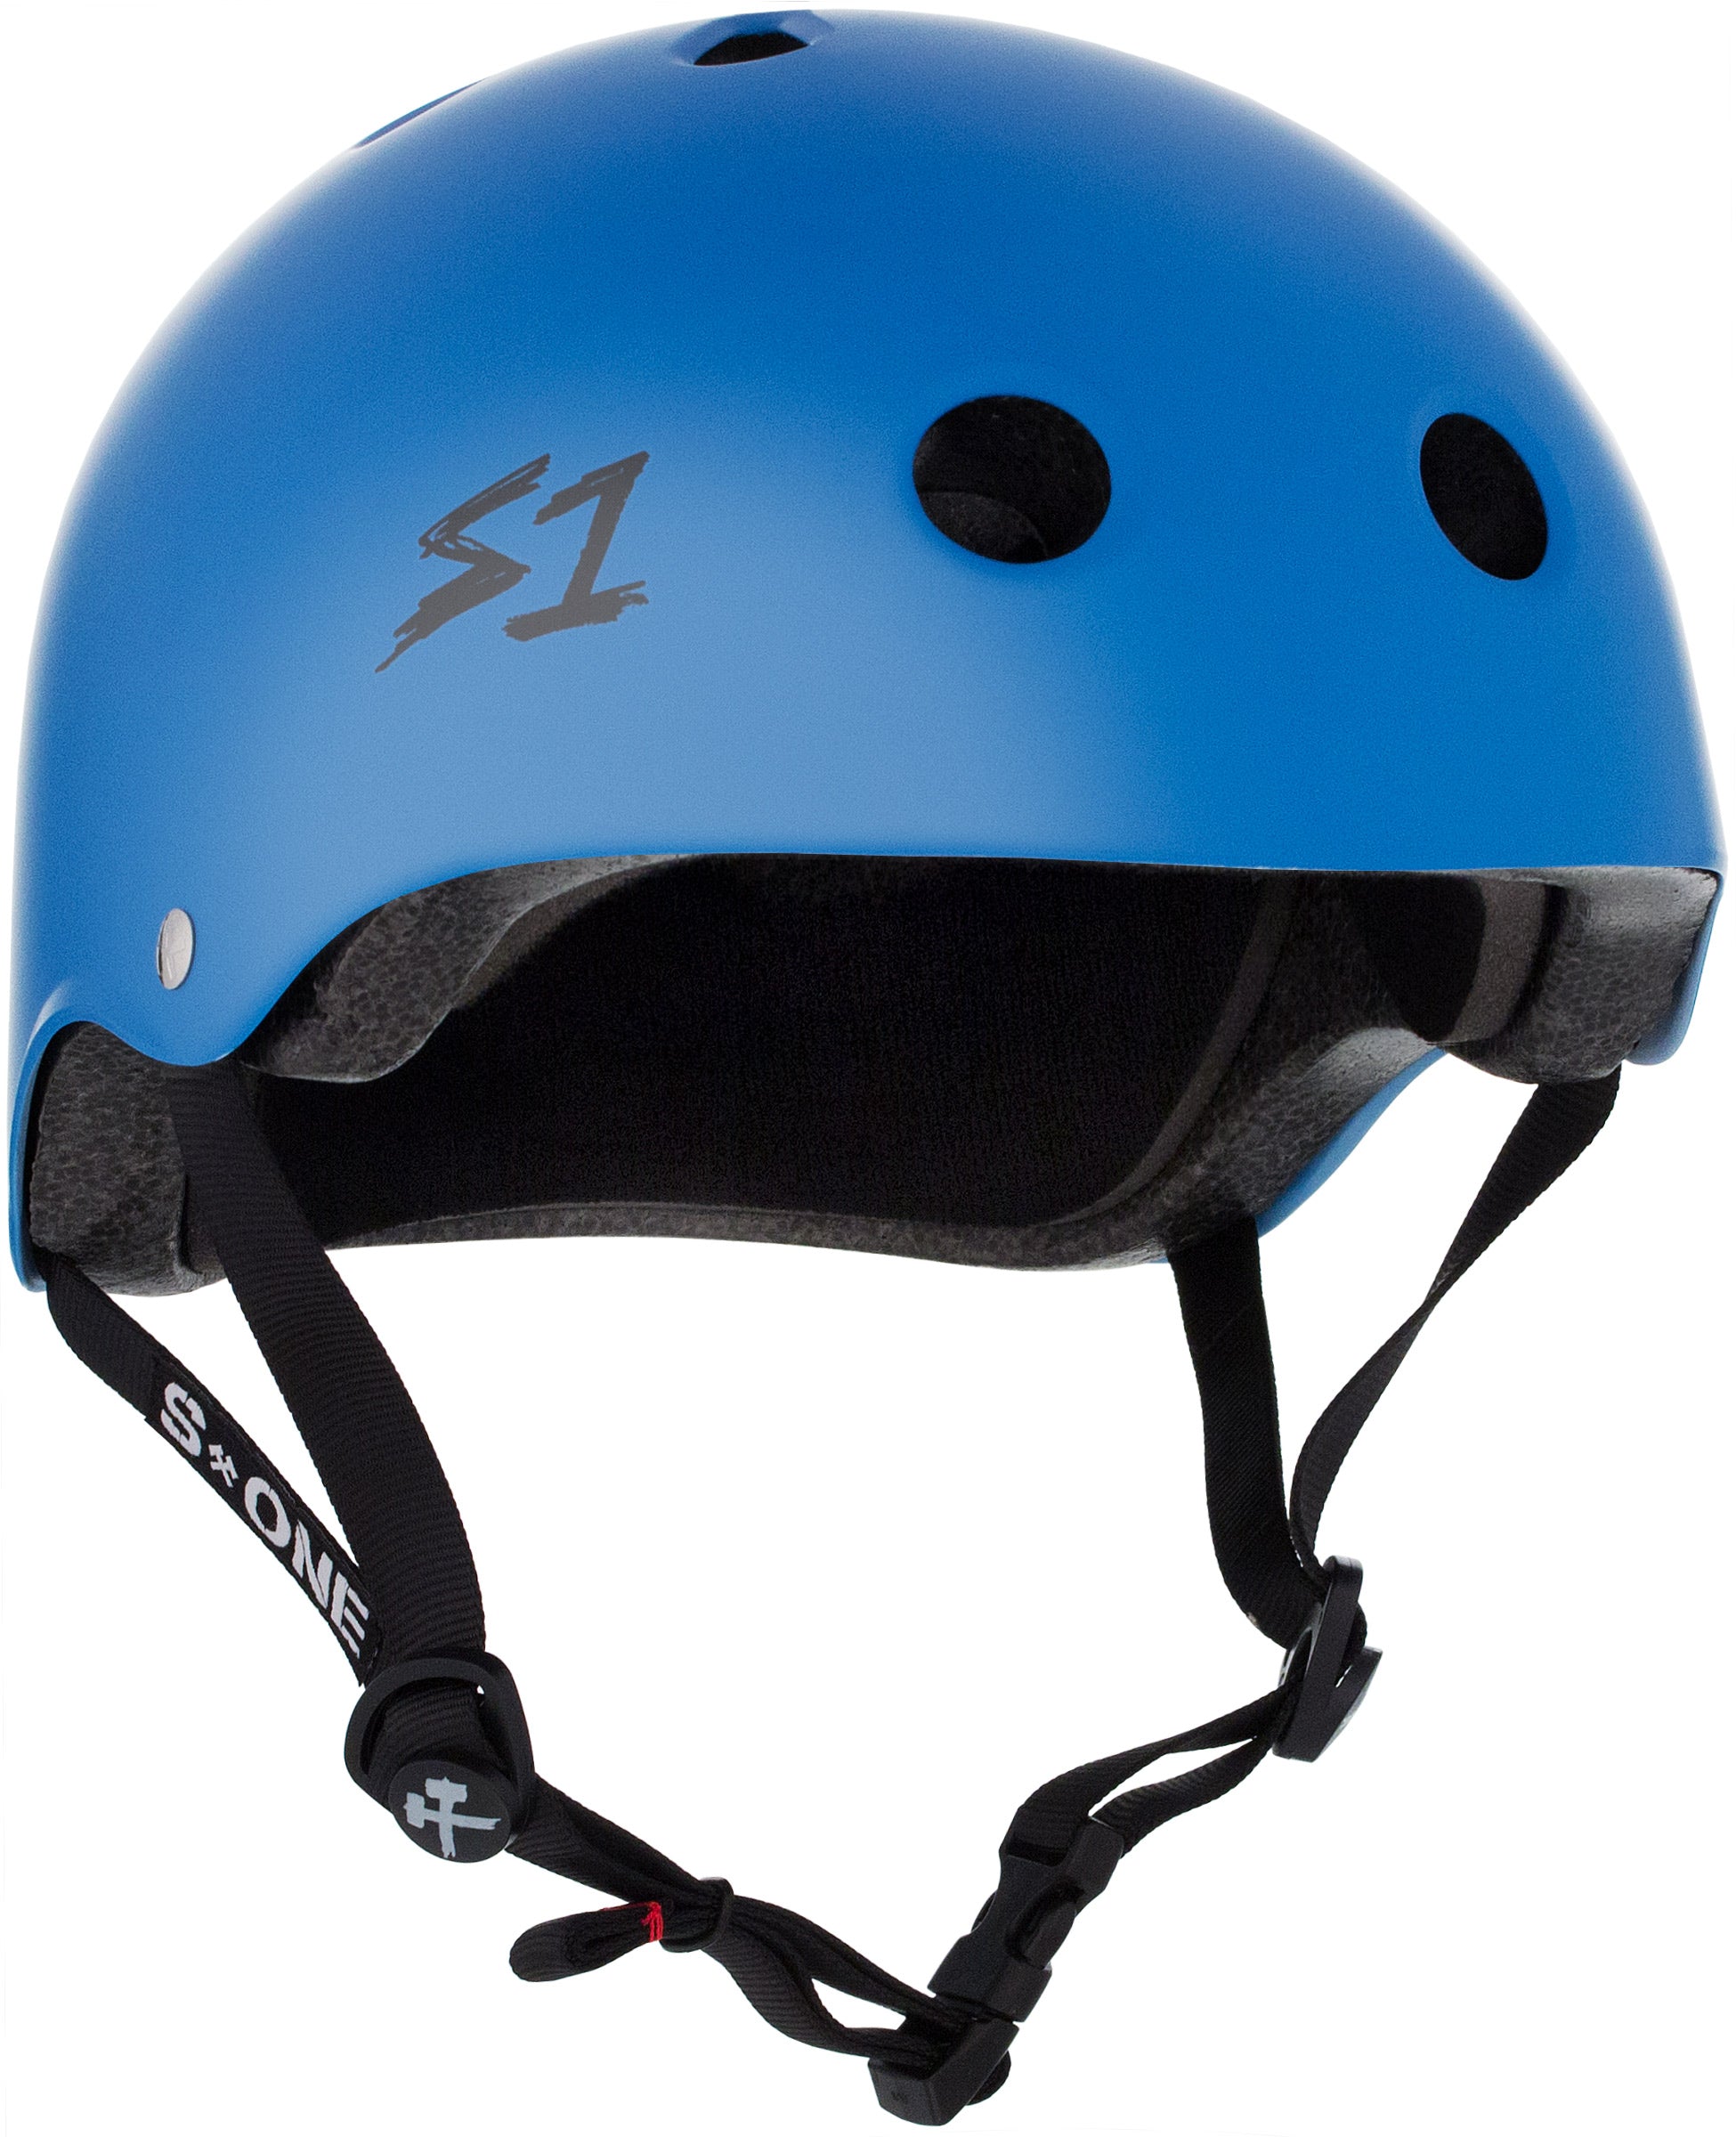 S1 Lifer Helmet - Casque Cyan mât avec sangles noires